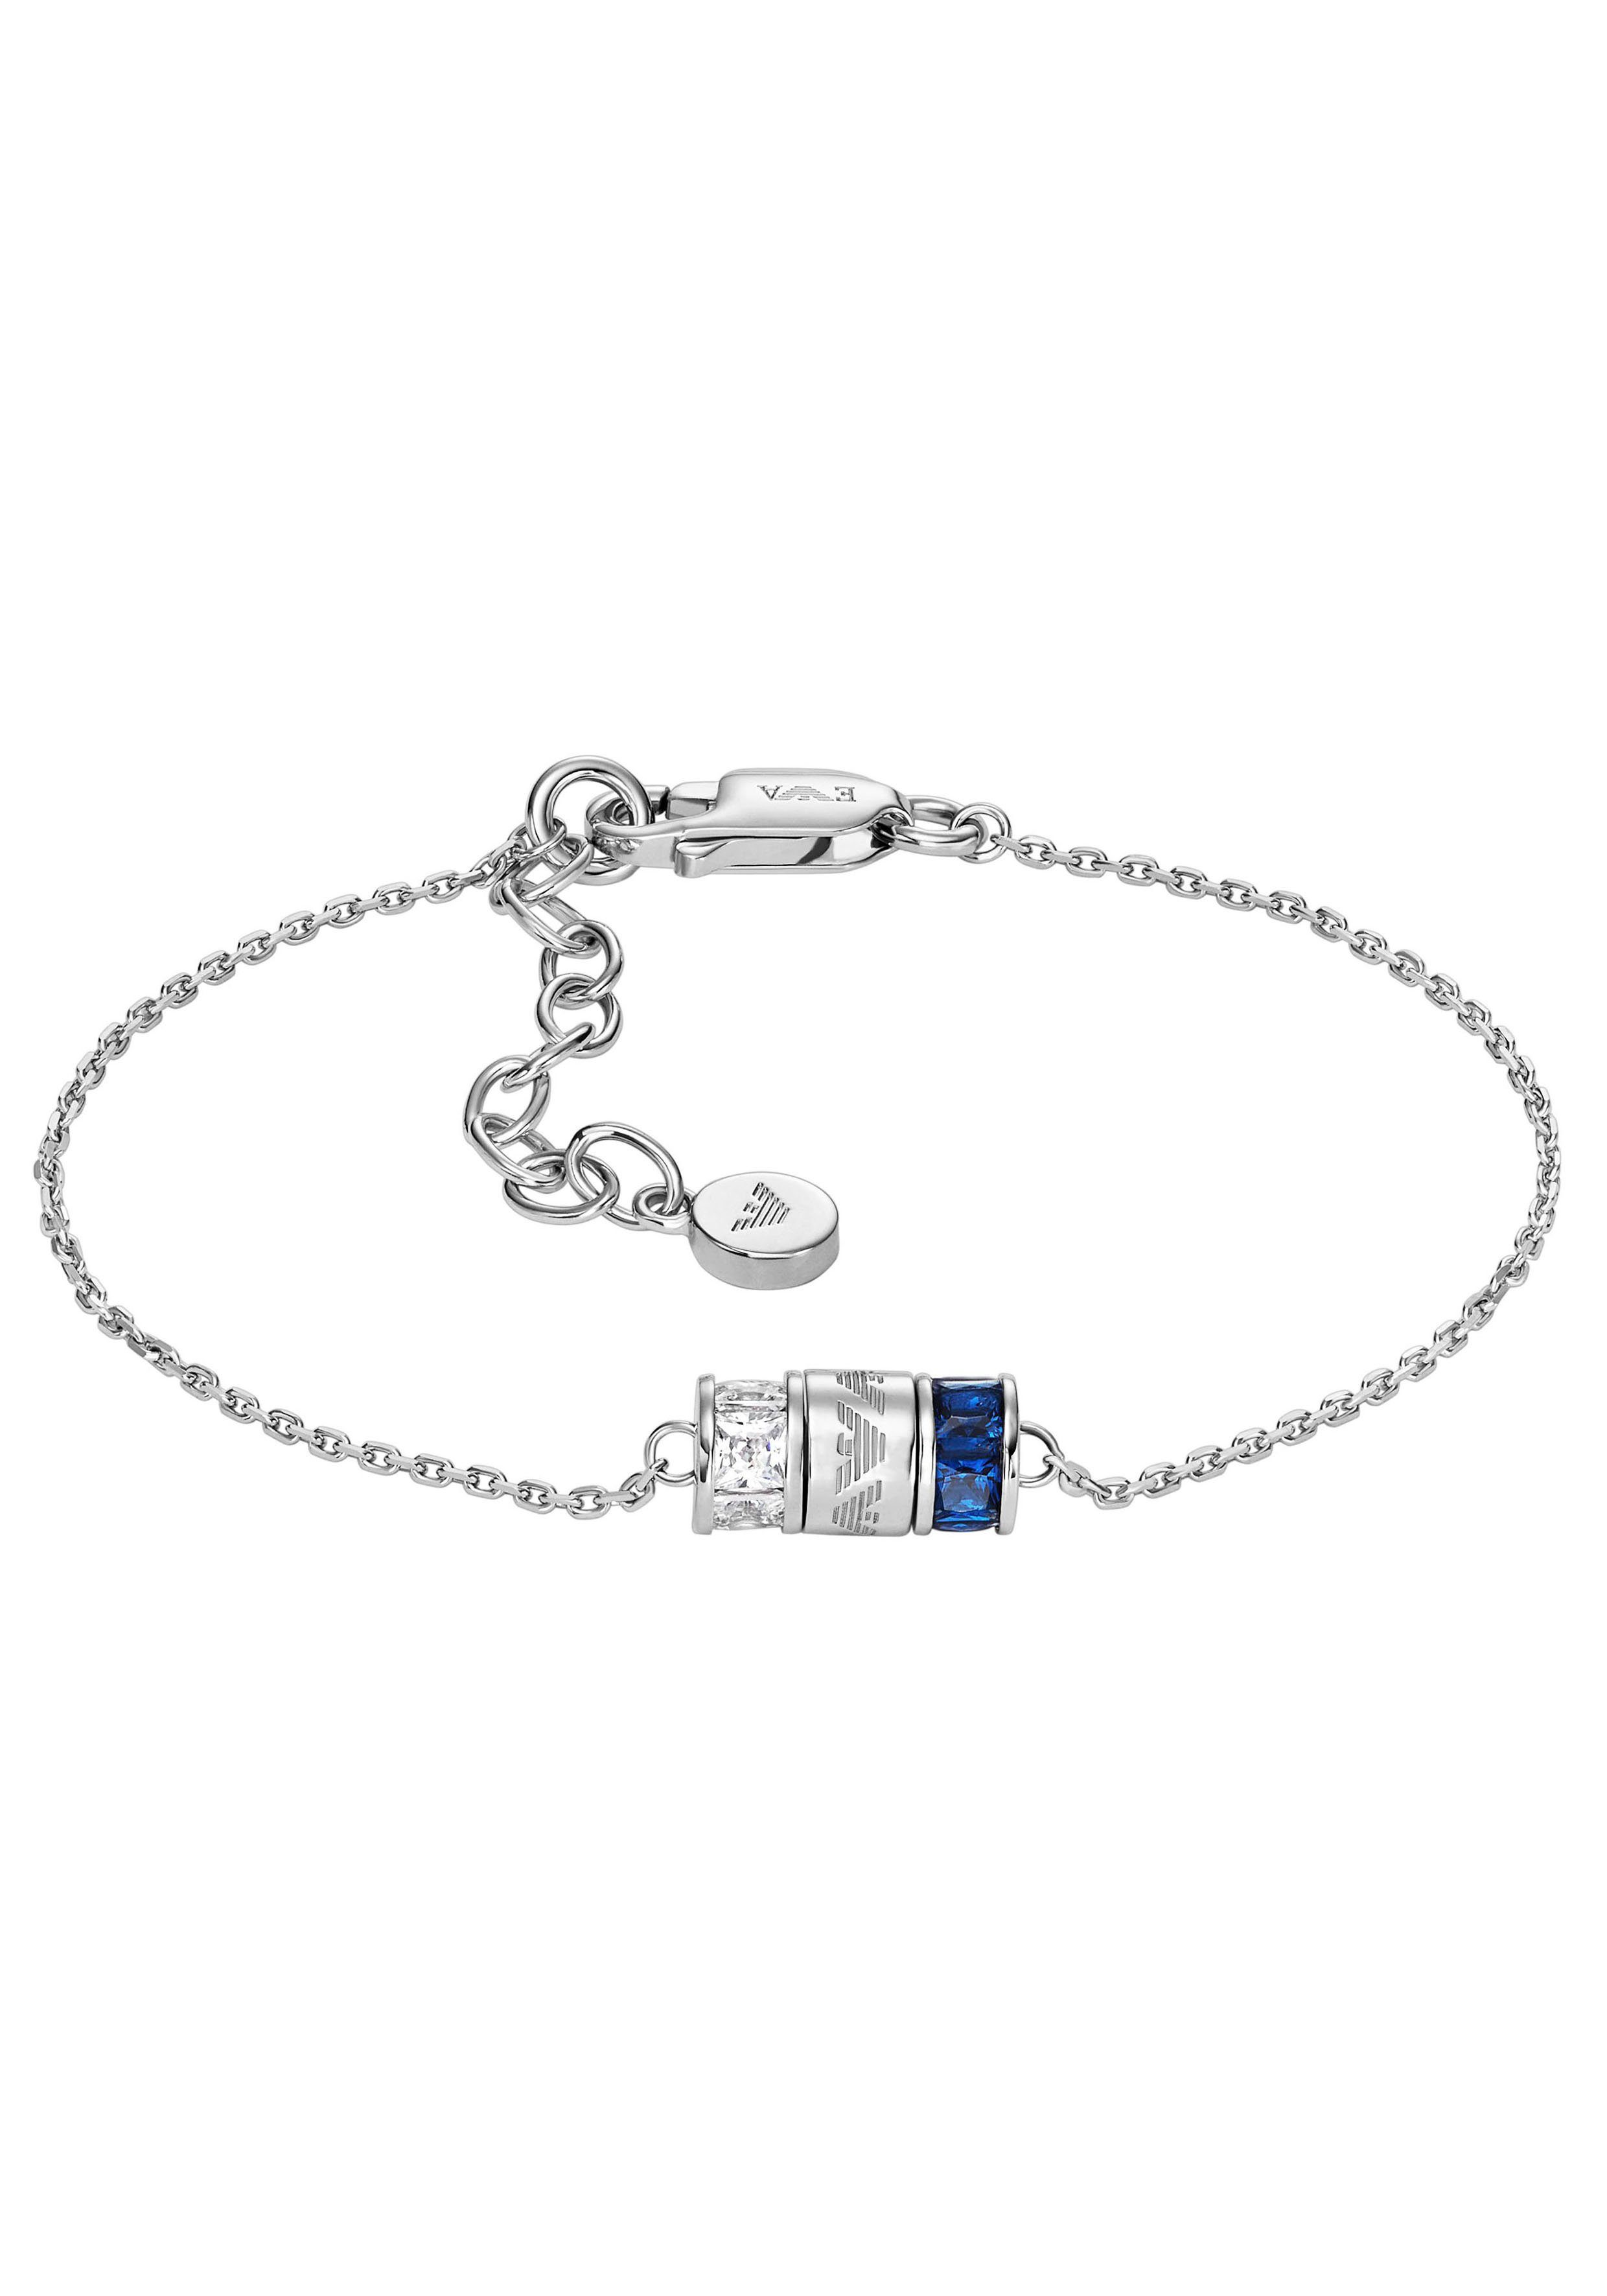 Emporio Armani Armband EG3579221, EG3580040, mit Zirkonia (synth) silberfarben-kristallweiß-blau